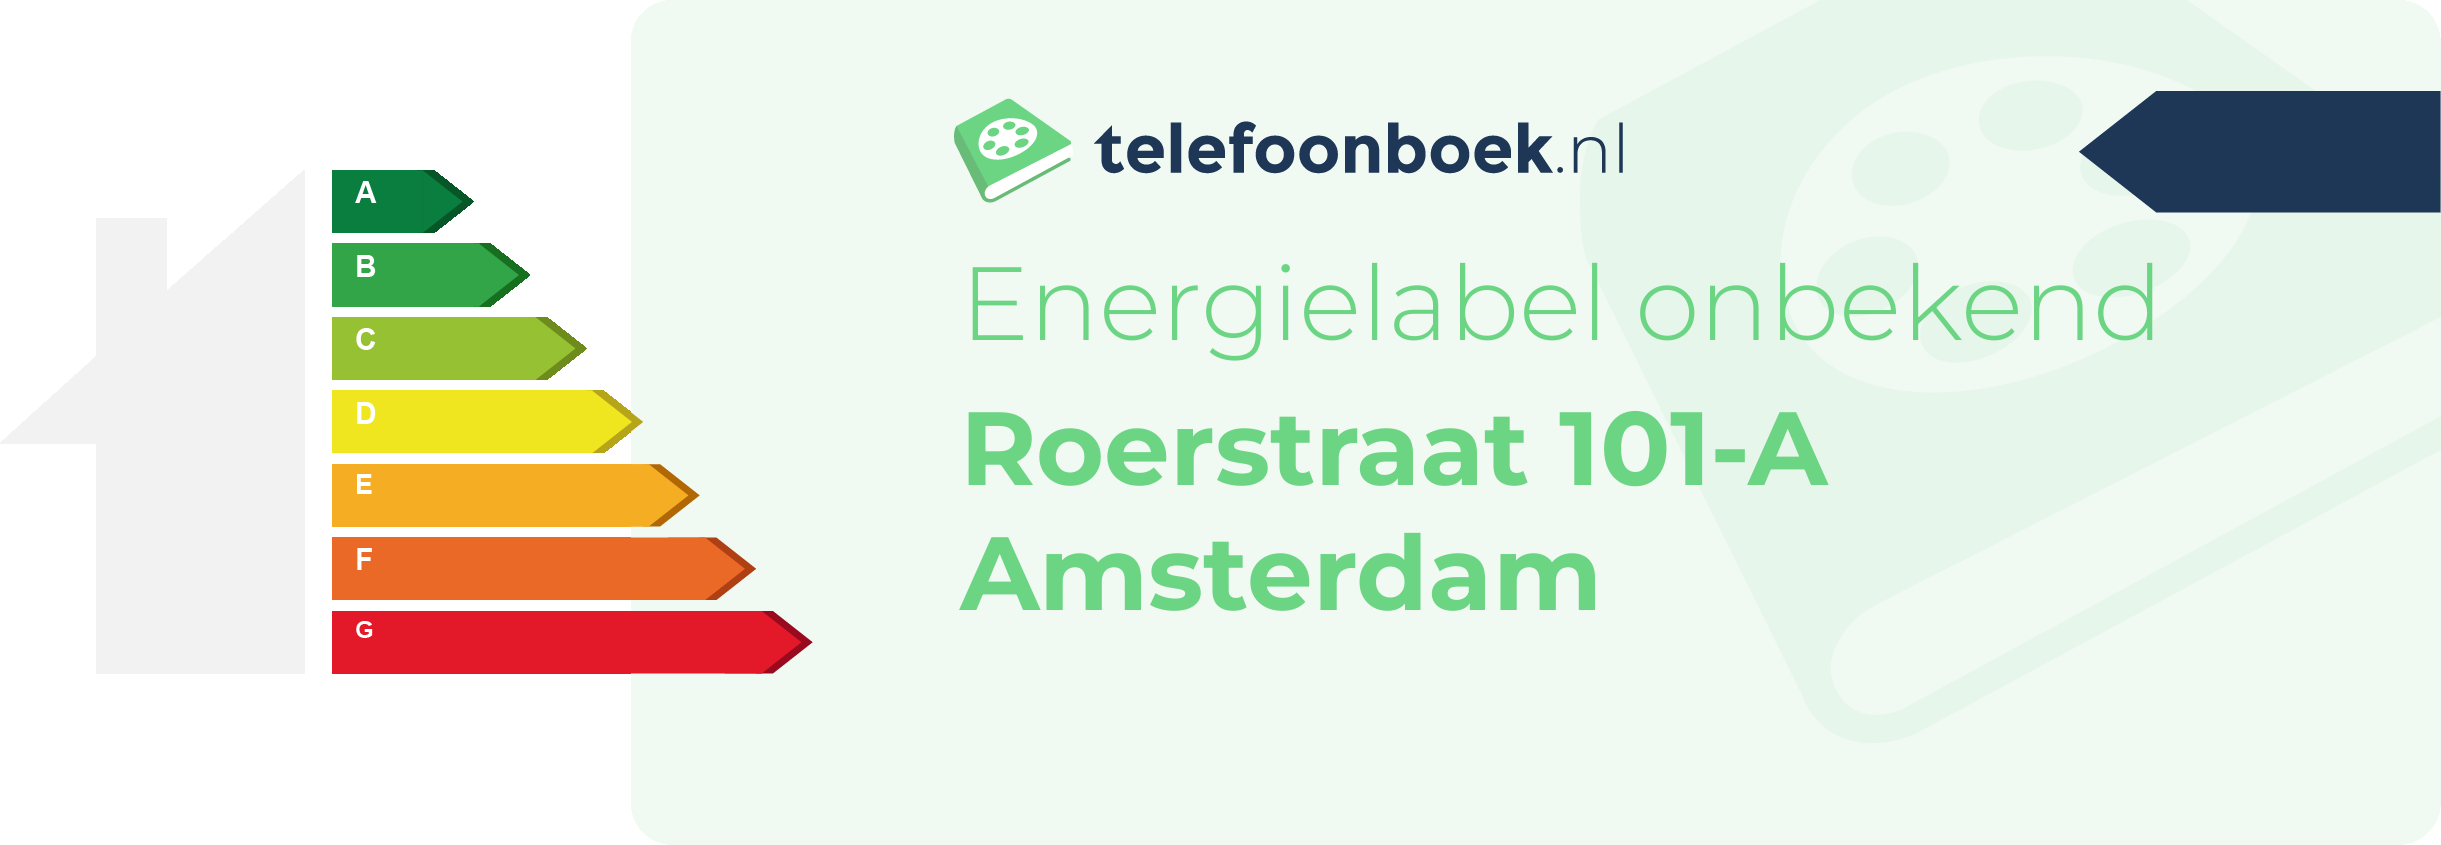 Energielabel Roerstraat 101-A Amsterdam